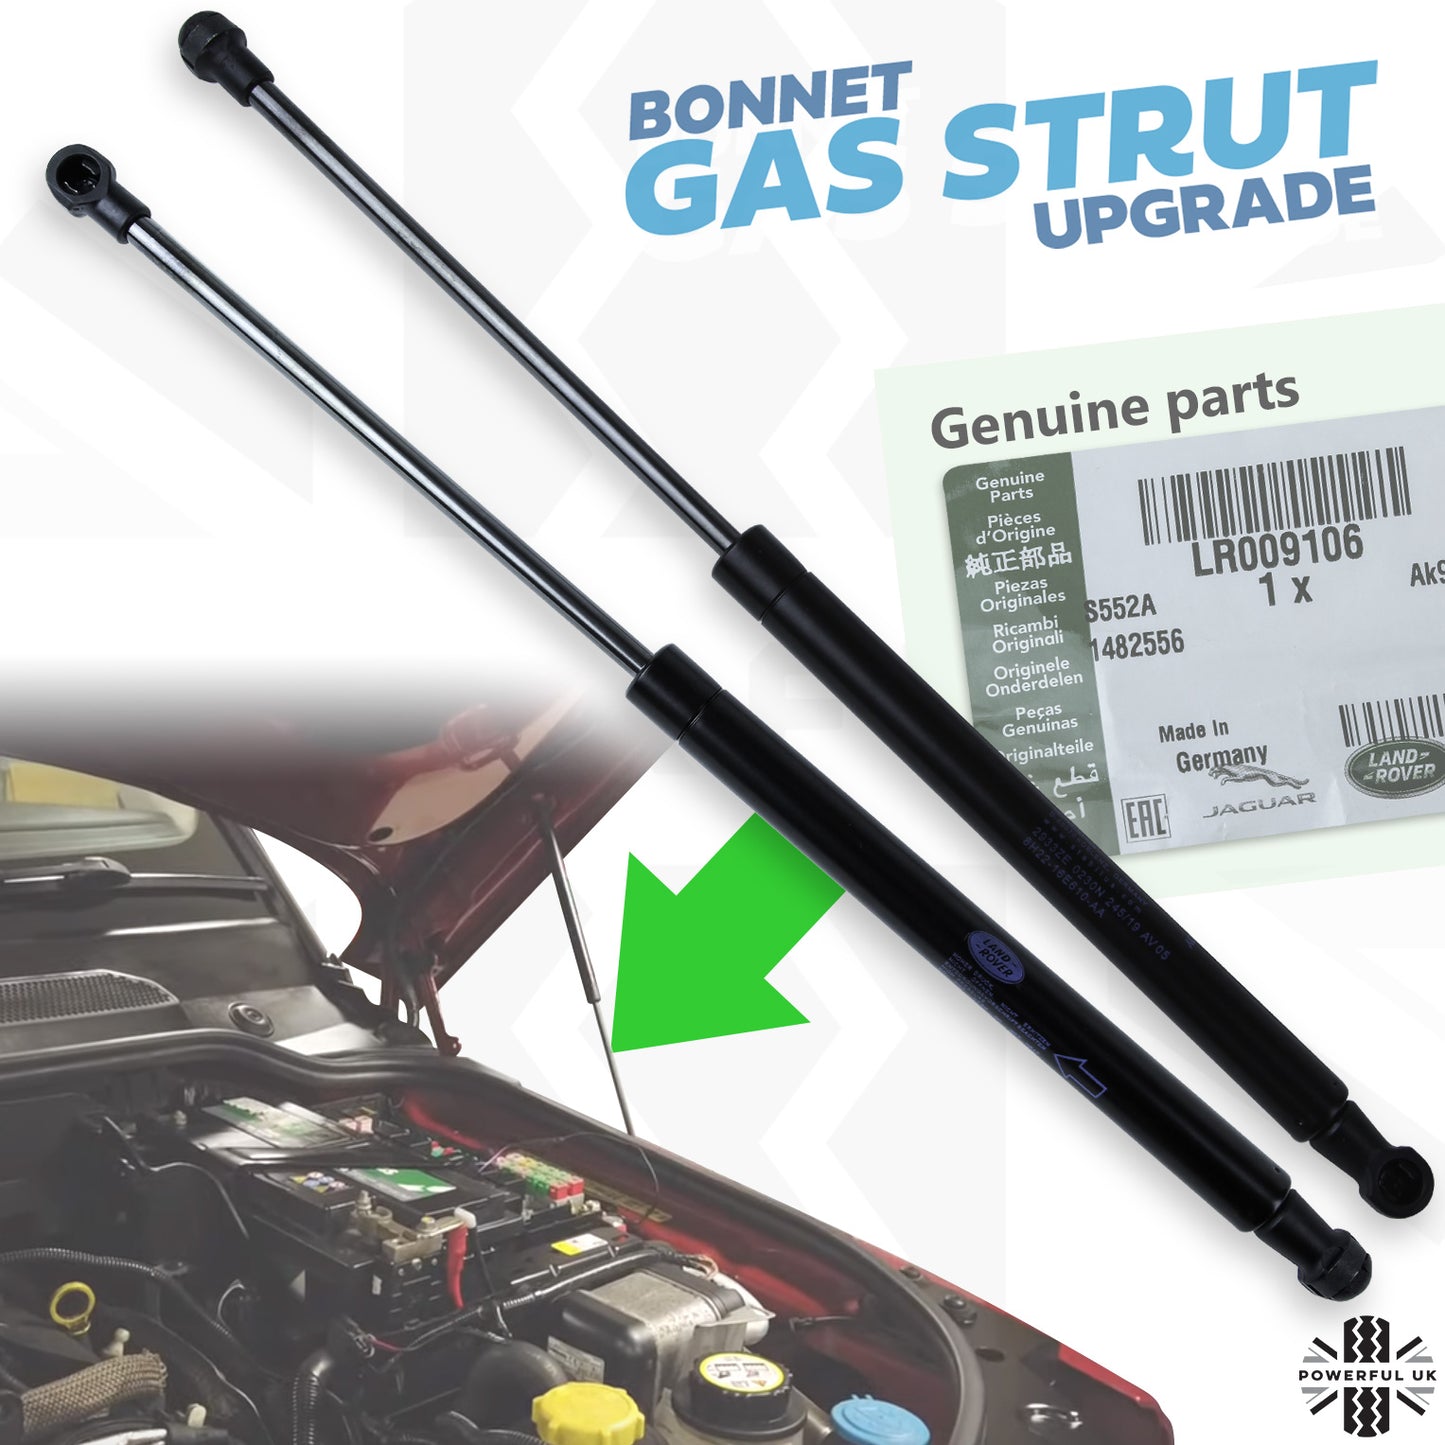 Bonnet Gas Struts for Range Rover Sport L320 - Genuine - PAIR